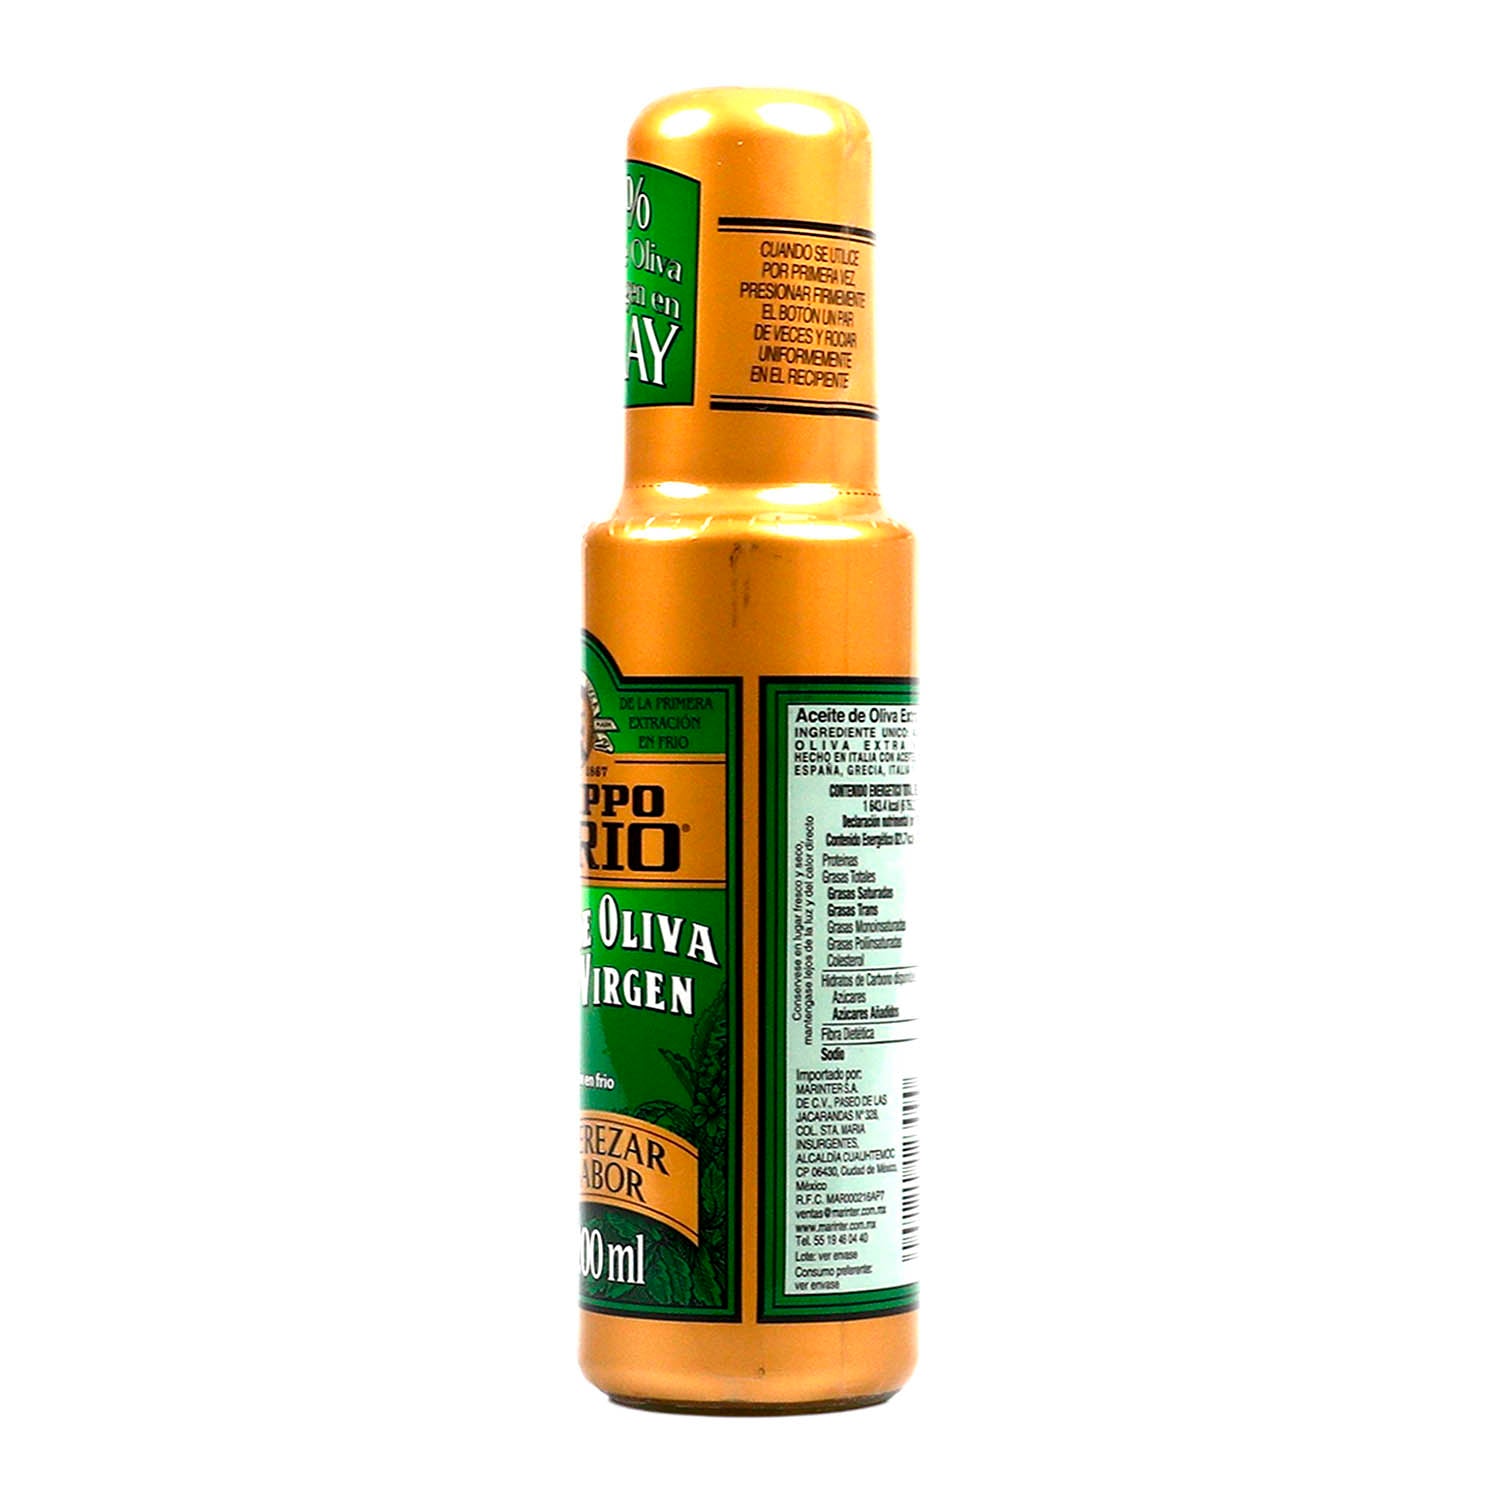 Aceite de Oliva extra virgen spray 200 ml